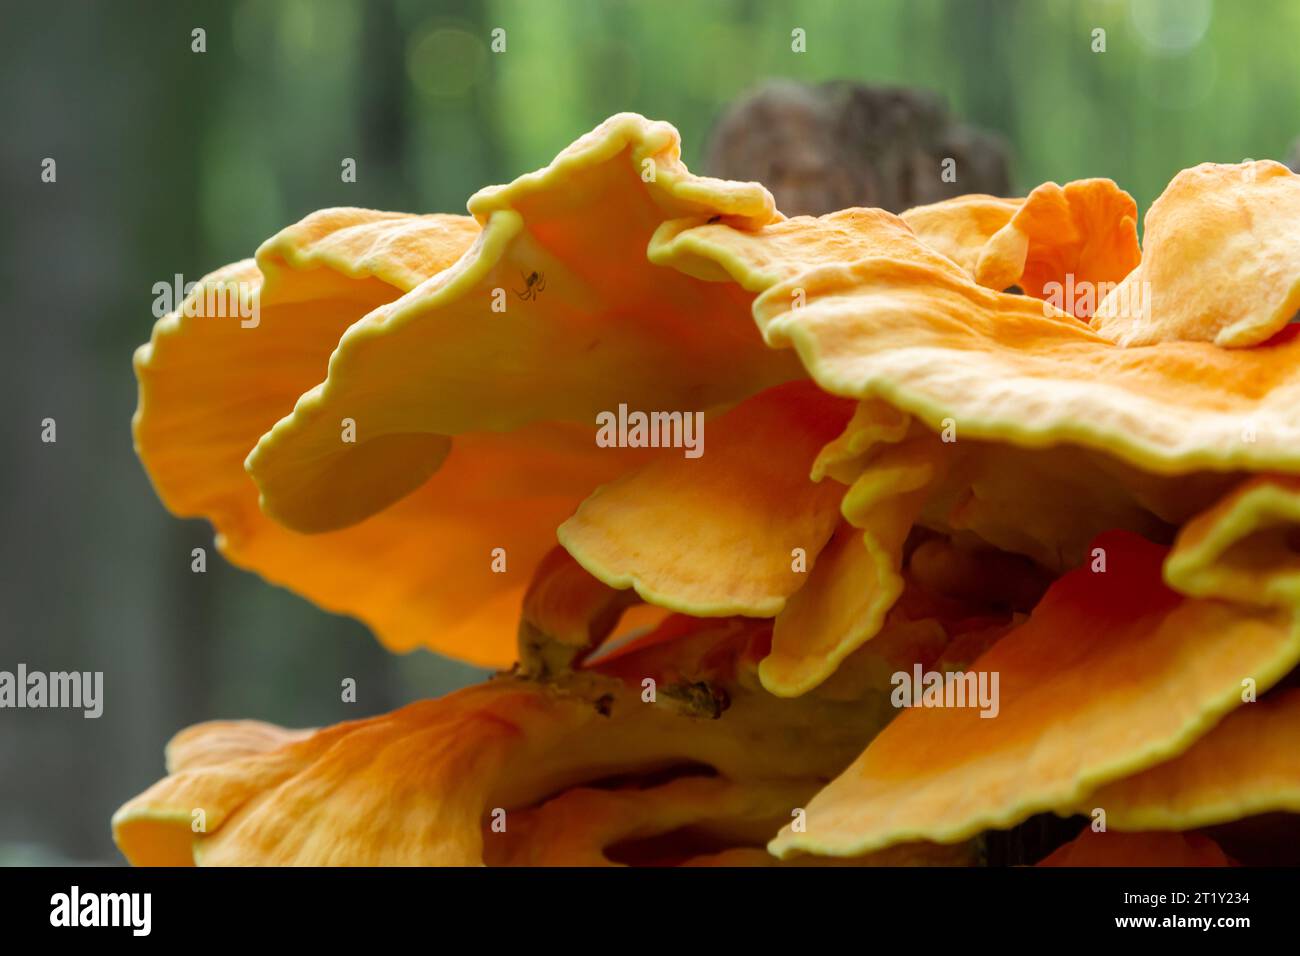 and fungi - images Alamy Orange mushroom stock hi-res stump photography